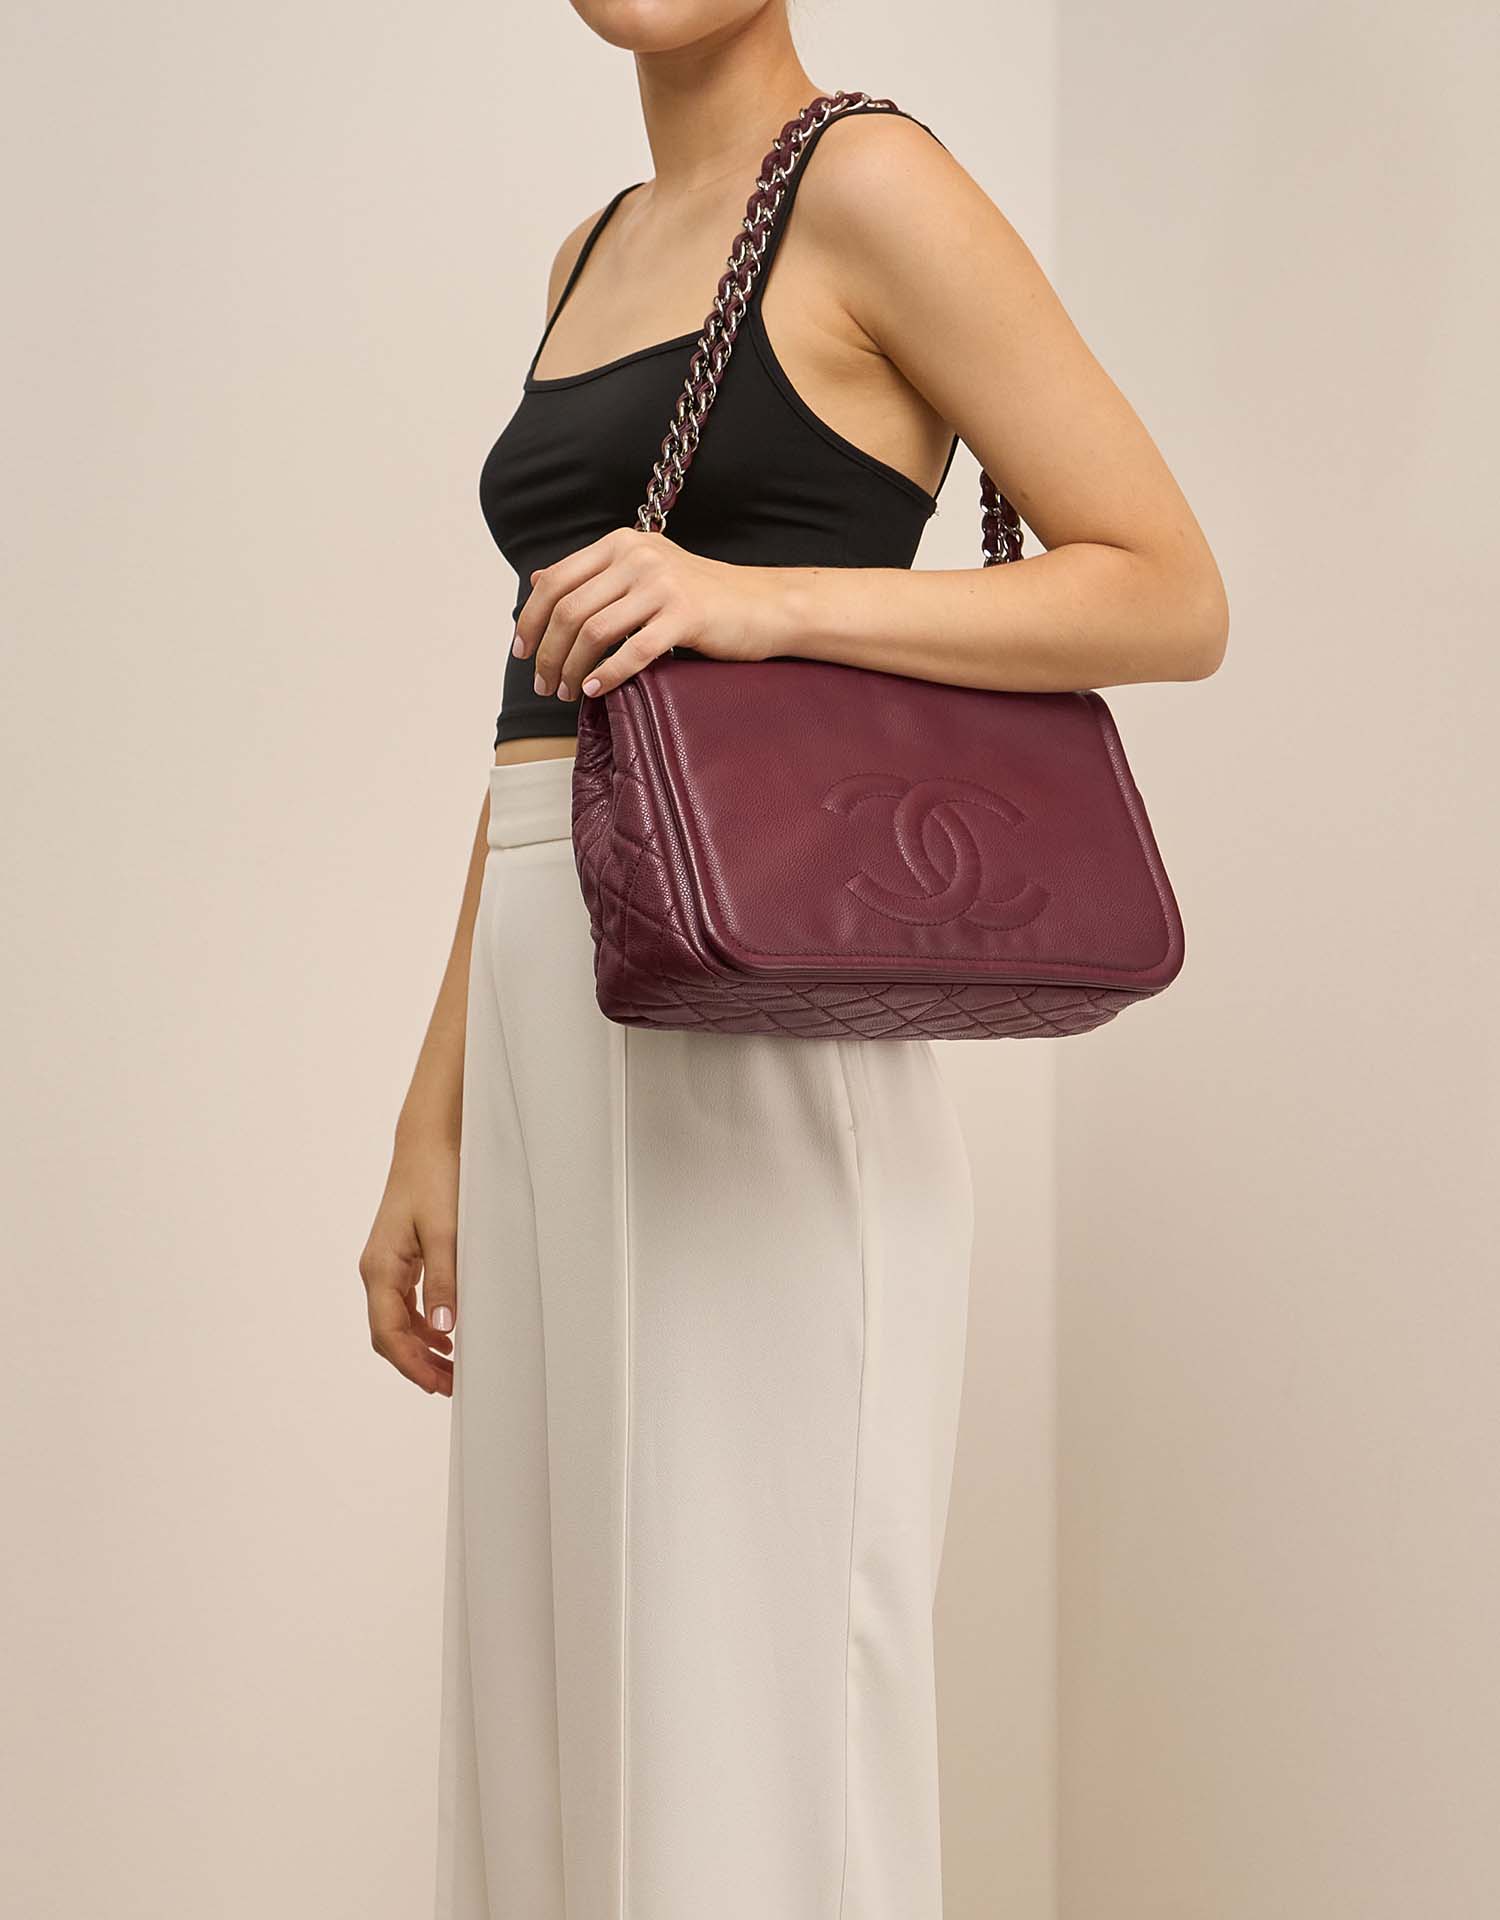 Chanel FlapBag Large Bordeaux on Model | Sell your designer bag on Saclab.com